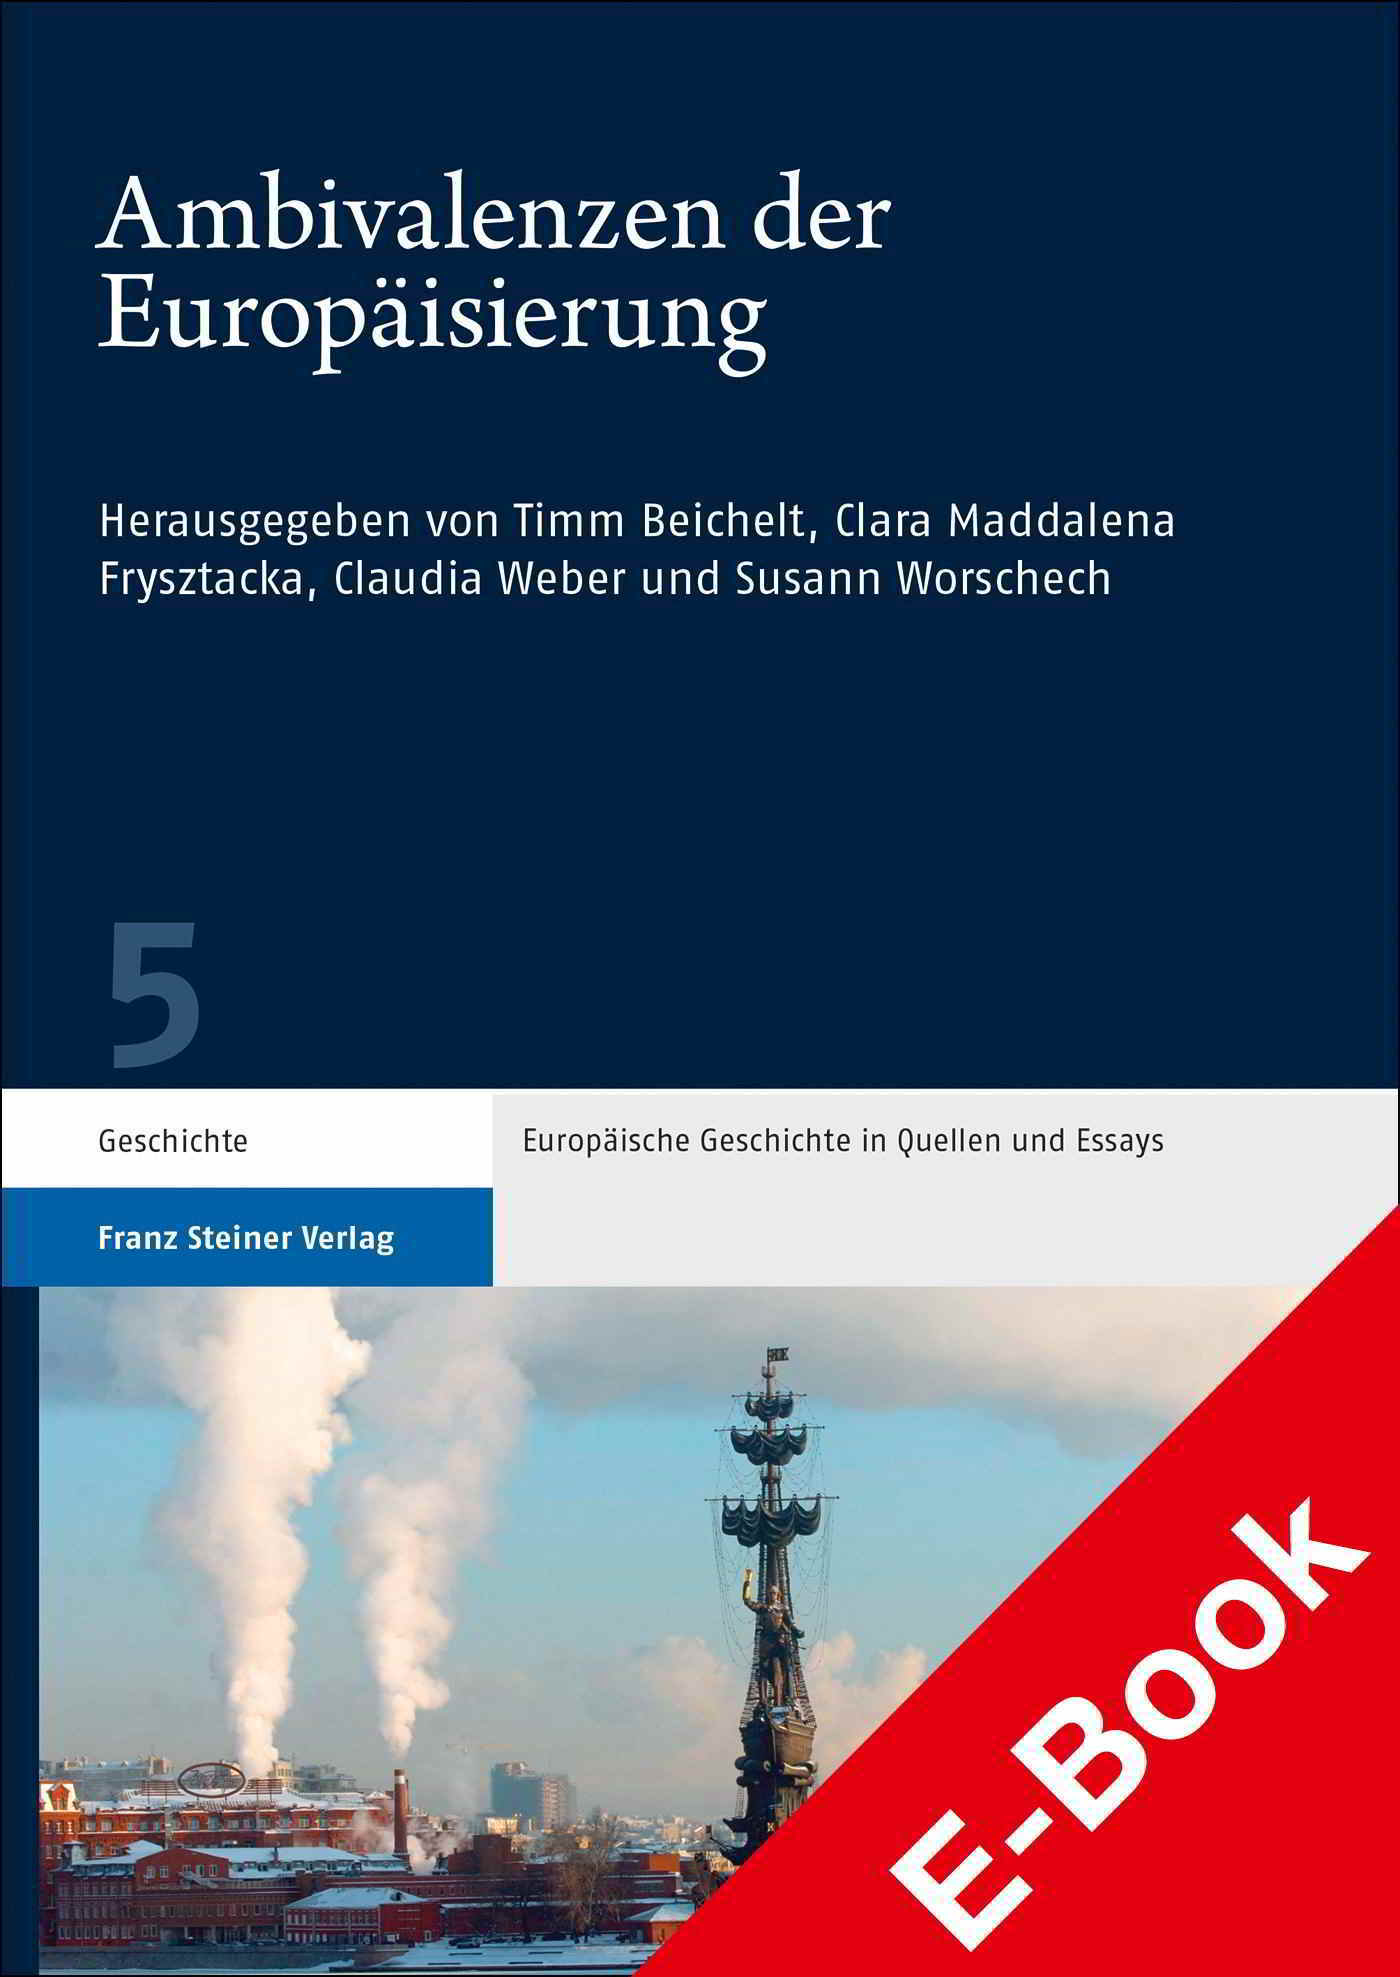 “Ambivalenzen der Europäisierung”, di Timm Beichelt, Clara Maddalena Frysztacka, Claudia Weber, Susann Worschech, 2021.